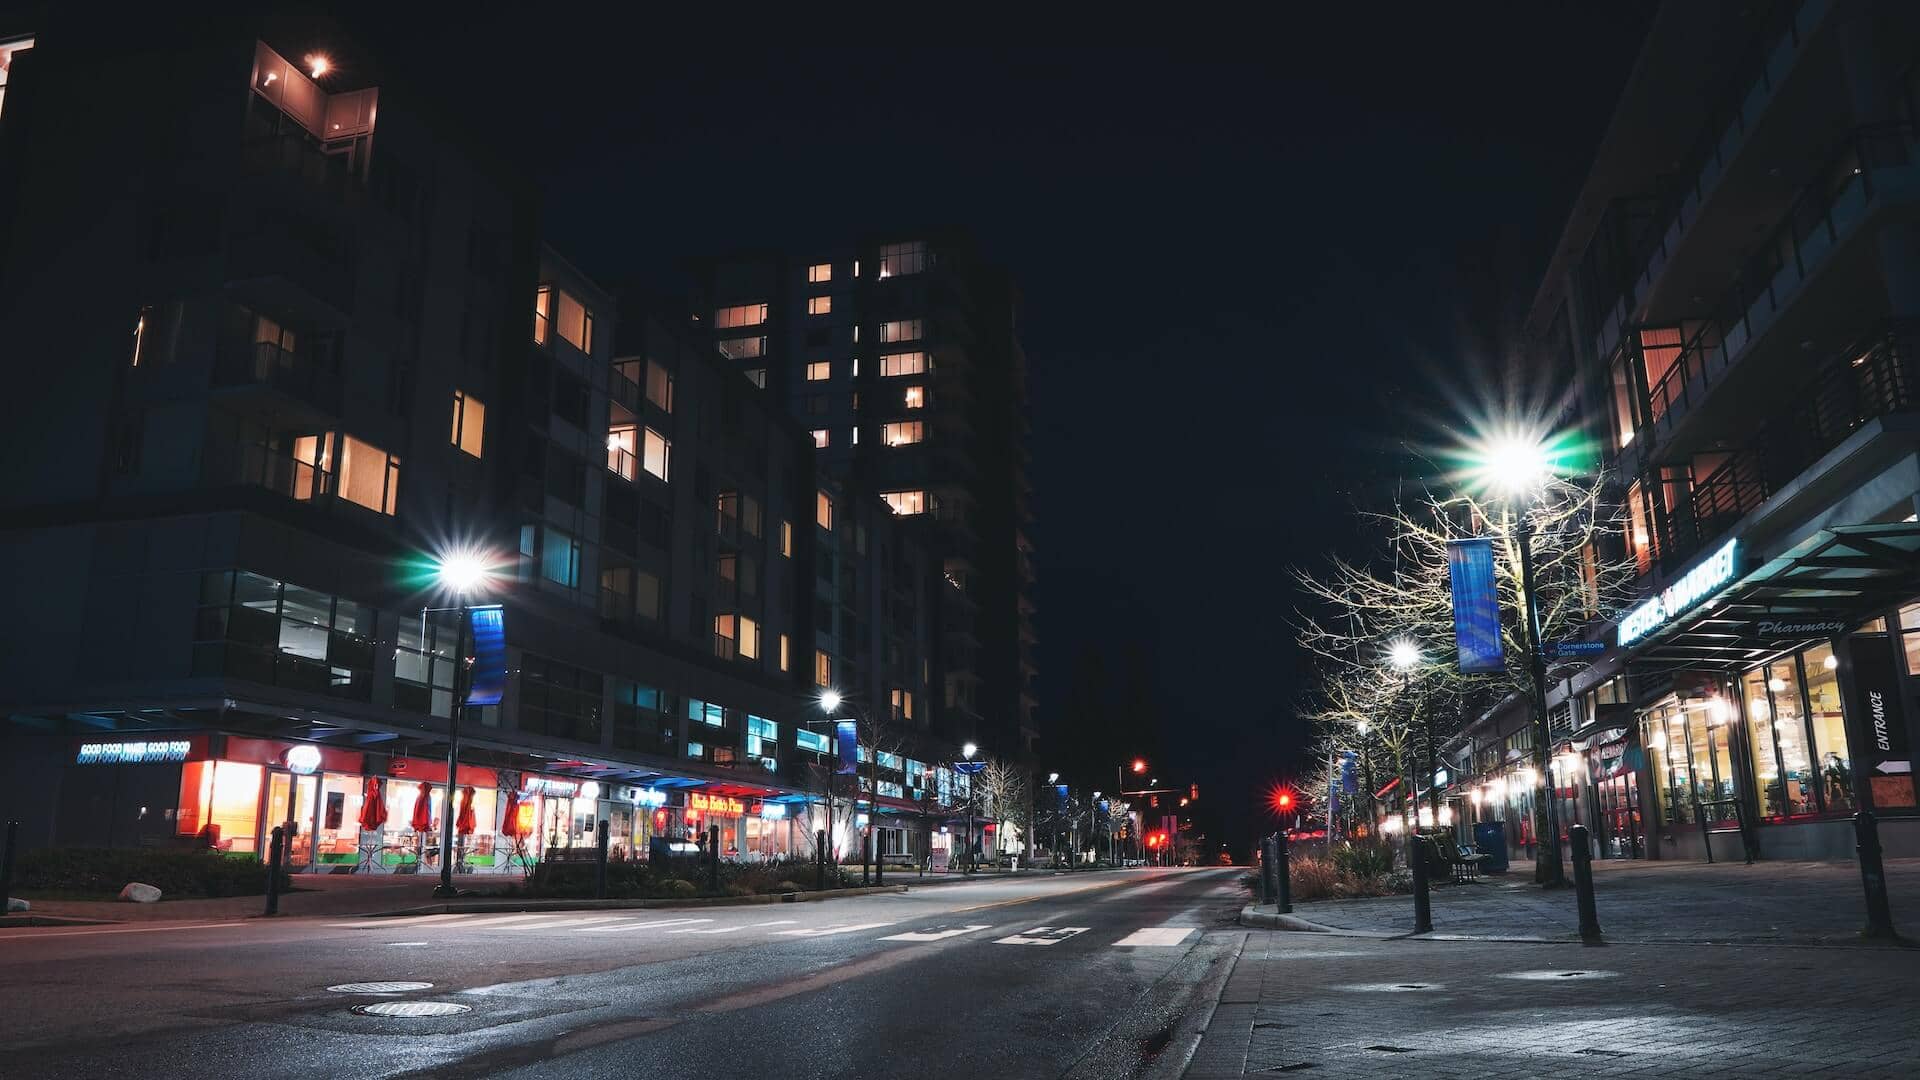 A well lit street